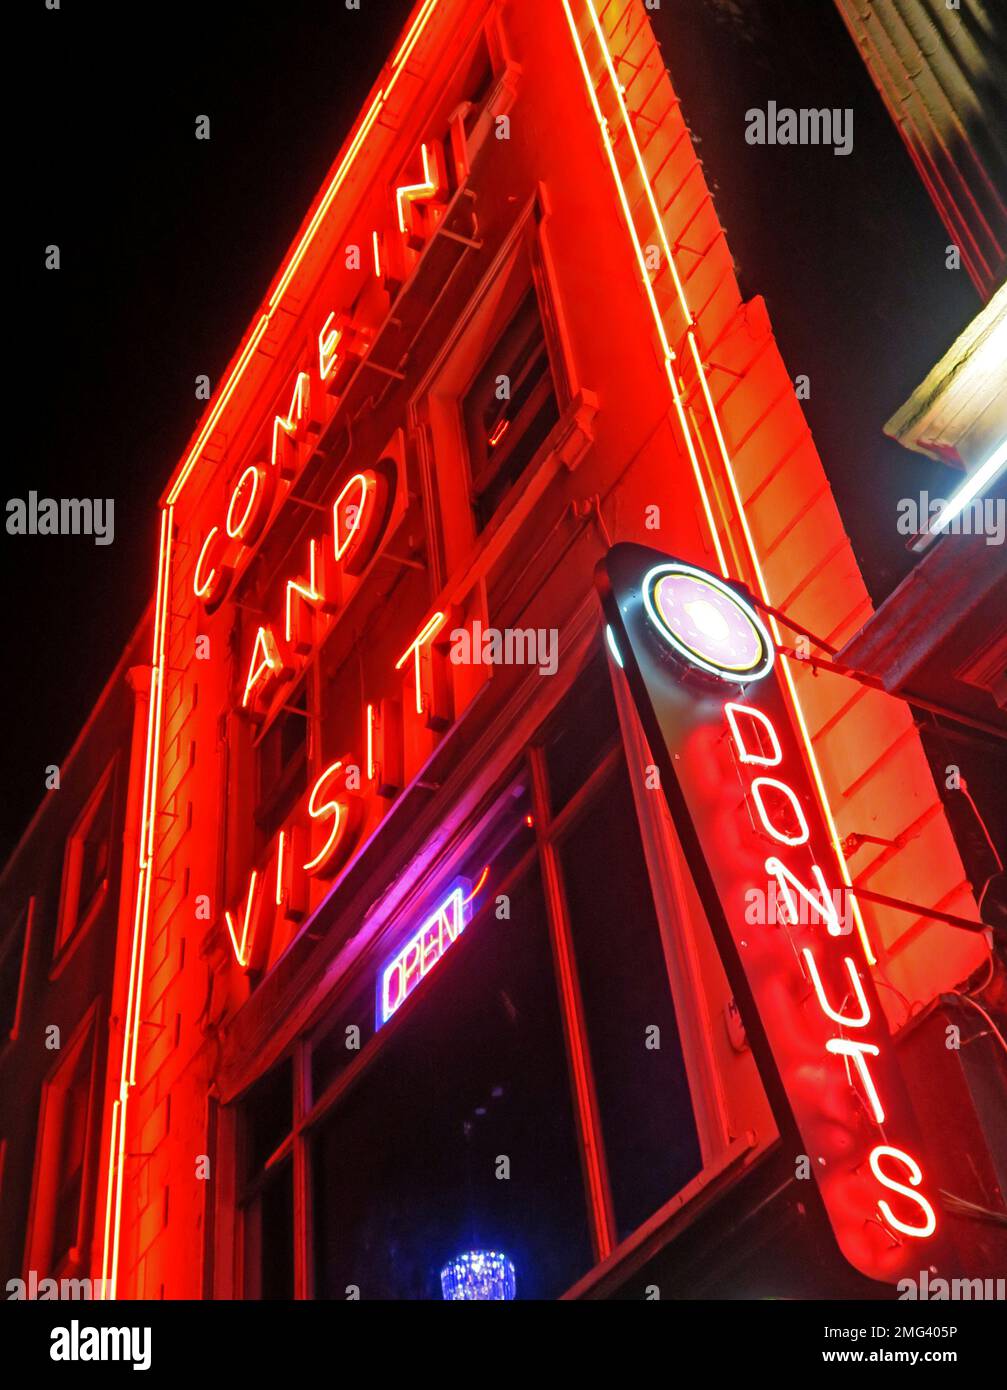 Beignets, entrez et visitez, panneau au néon rouge la nuit, Dublin, Irlande Banque D'Images